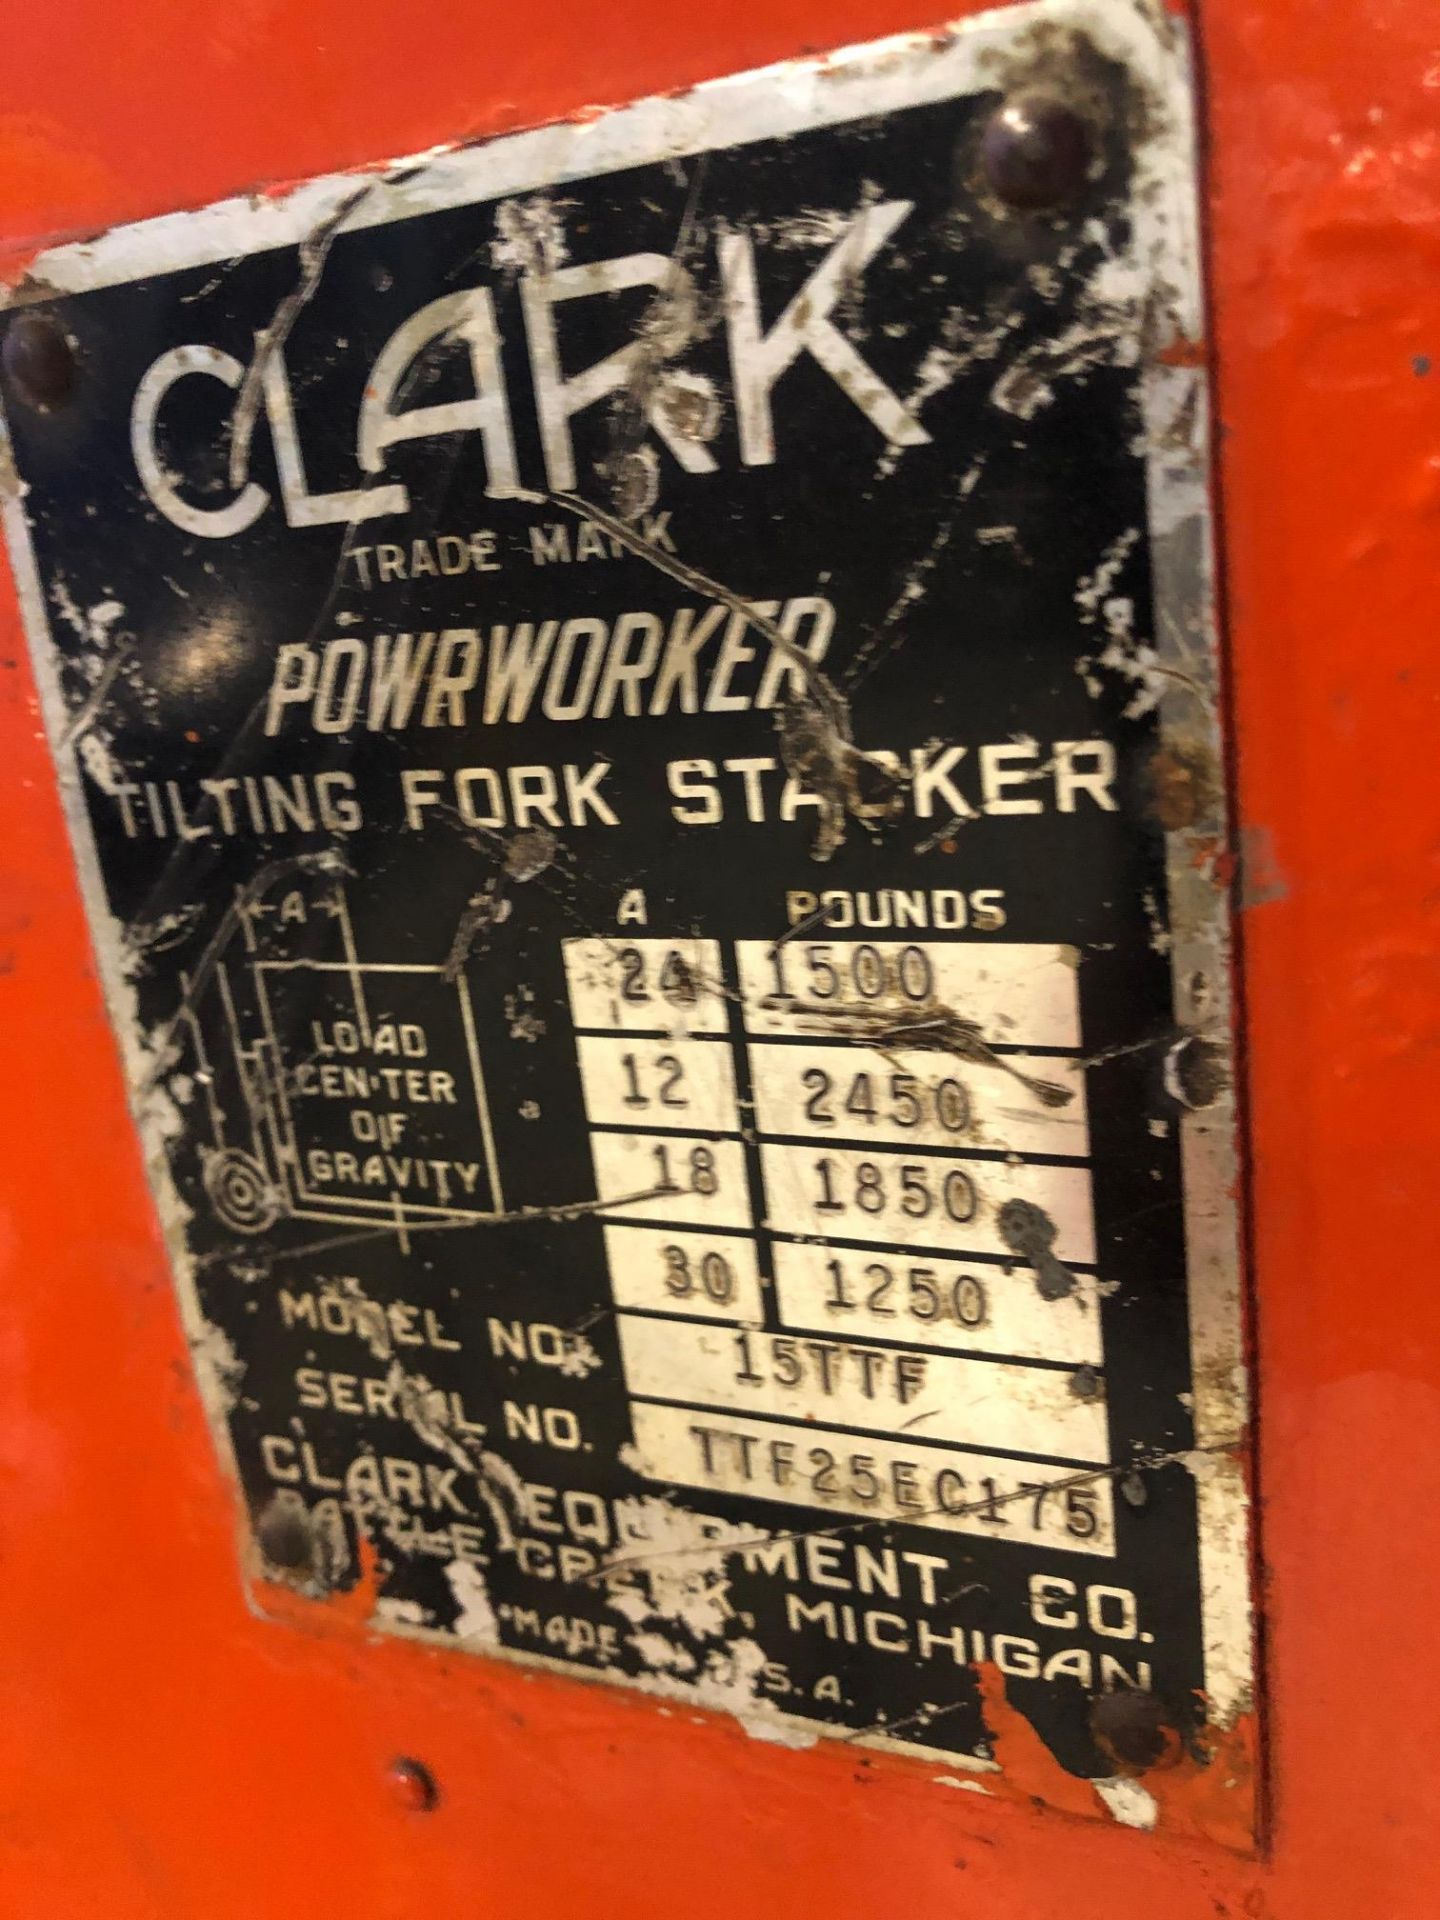 CLARK ELECTRIC WALKING STAKER, MODEL 15TTF, S/N TTF25EC175, 1500LB W/CHARGER - Image 4 of 5